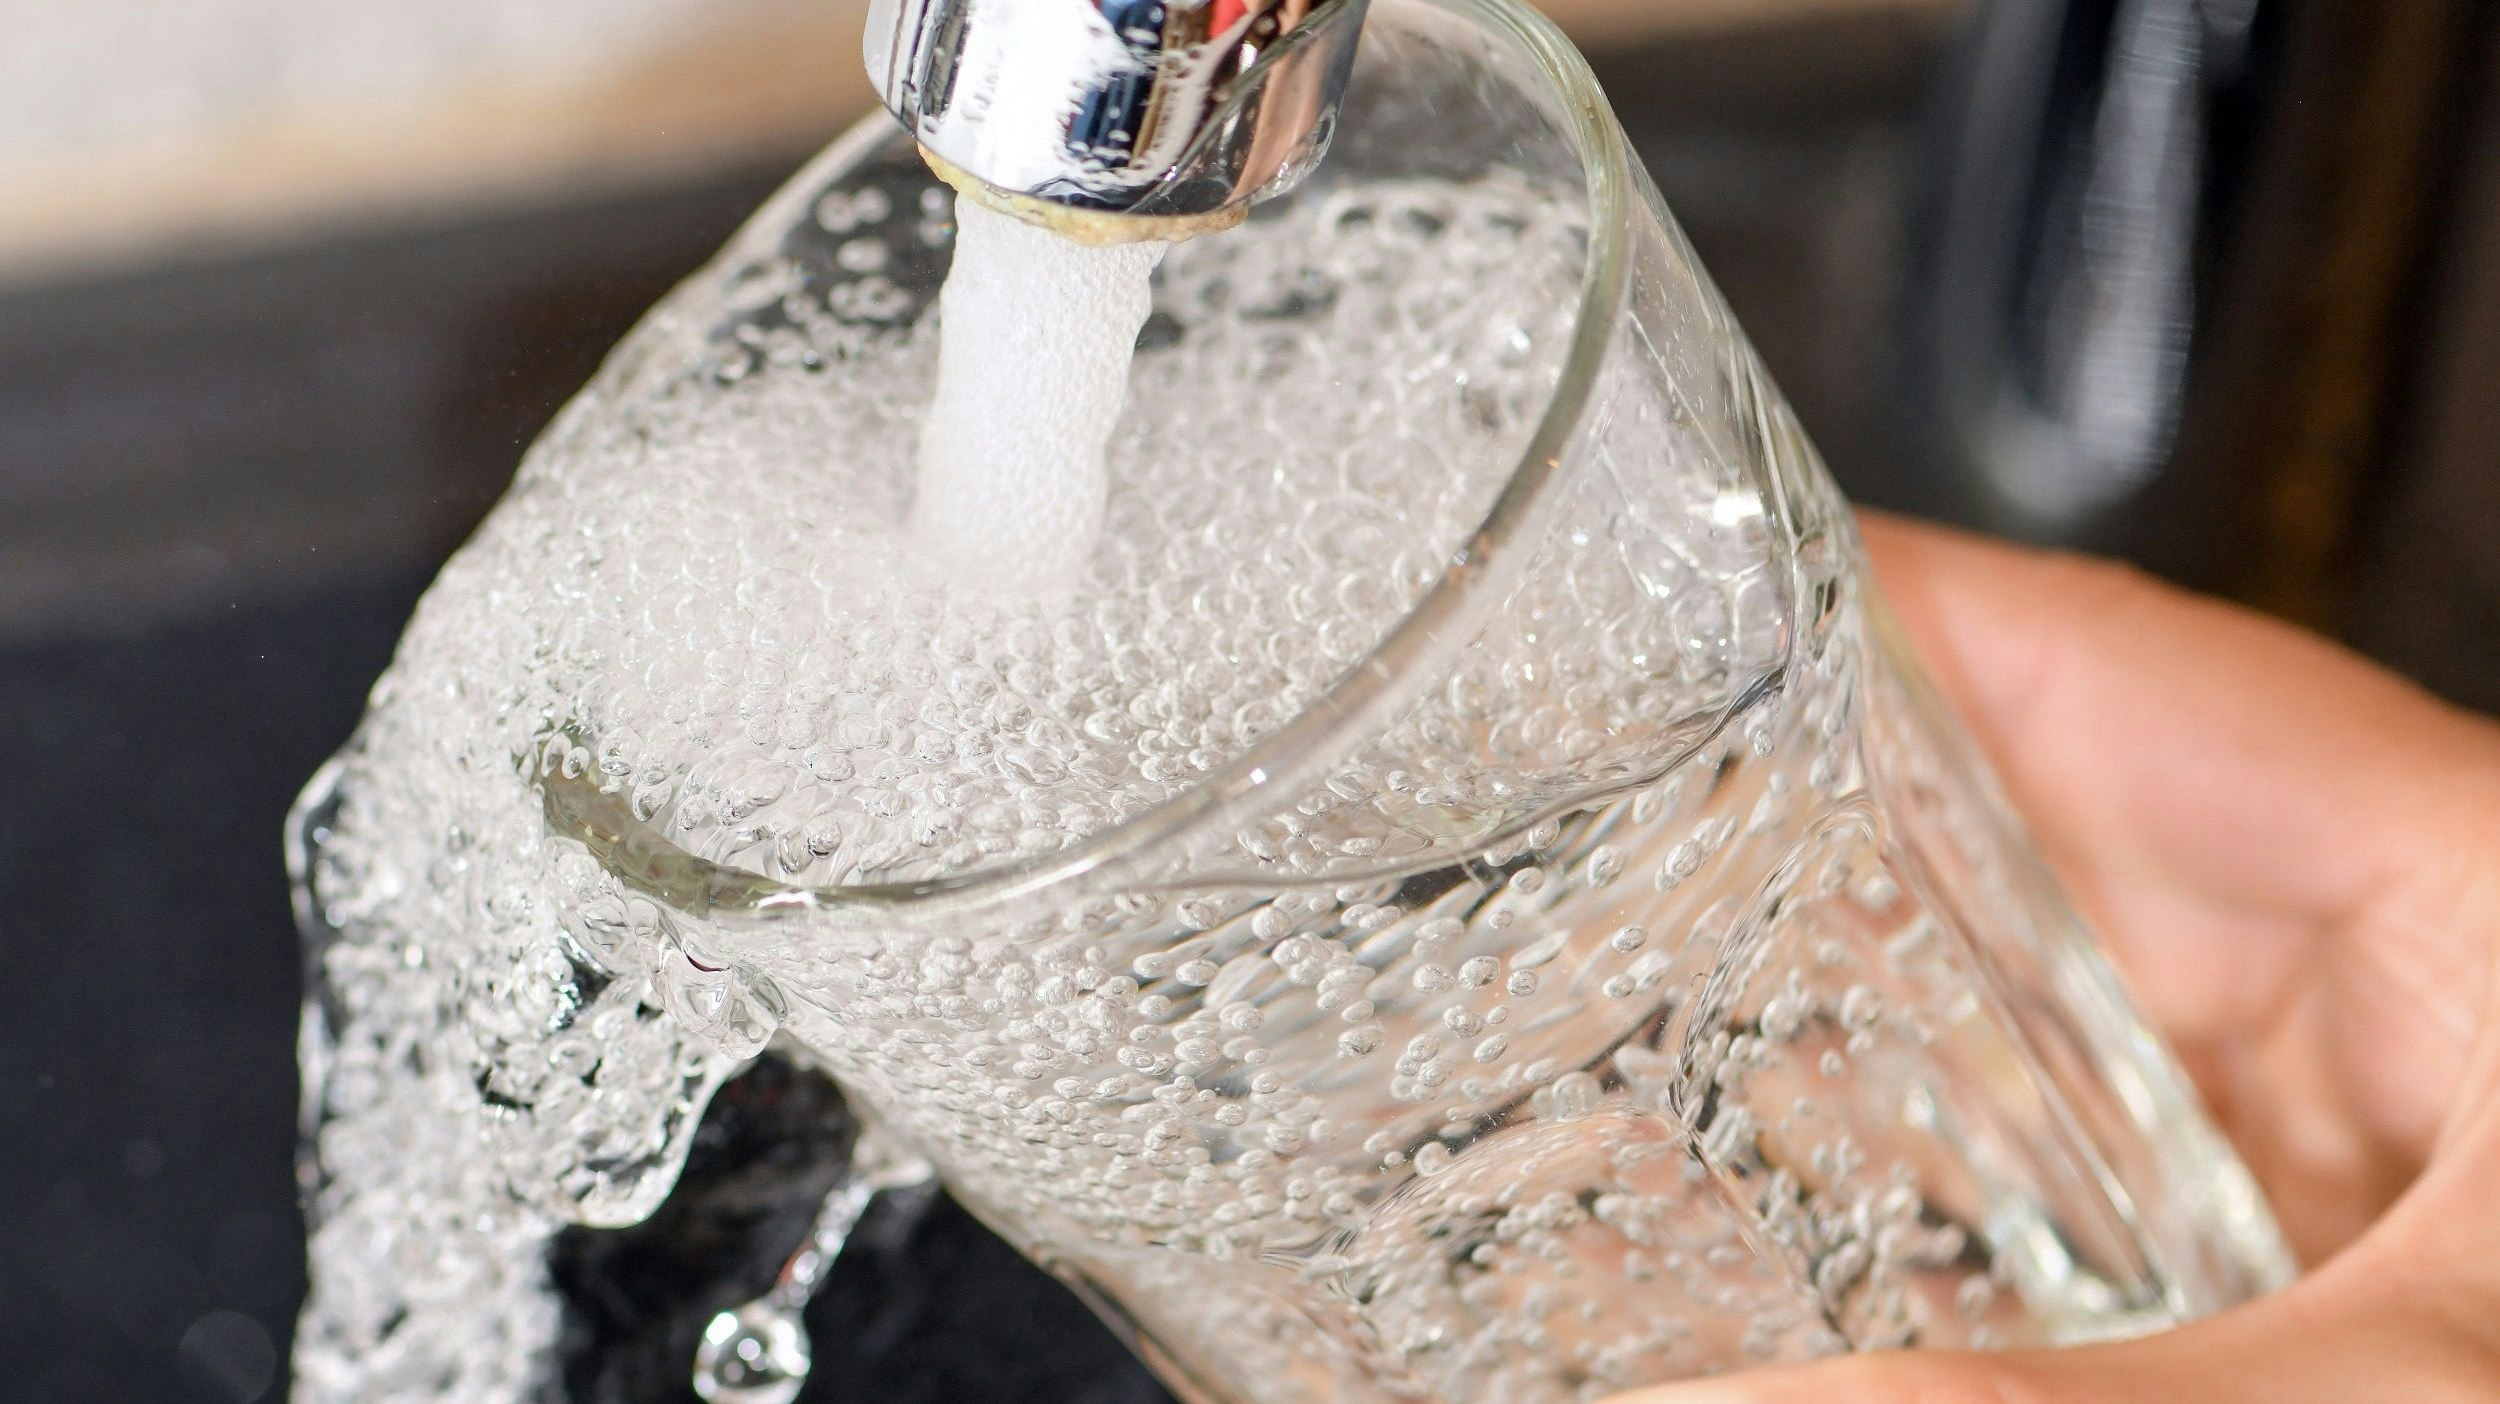 Kostbares Gut: Trinkwasser. Die Ressource dürfte sich für Verbraucher im Zuge der Vereinbarung zum Niedersächsischen Weg verteuern, um mehr Umweltschutz zu ermöglichen. Foto: dpa/Pleul<br>